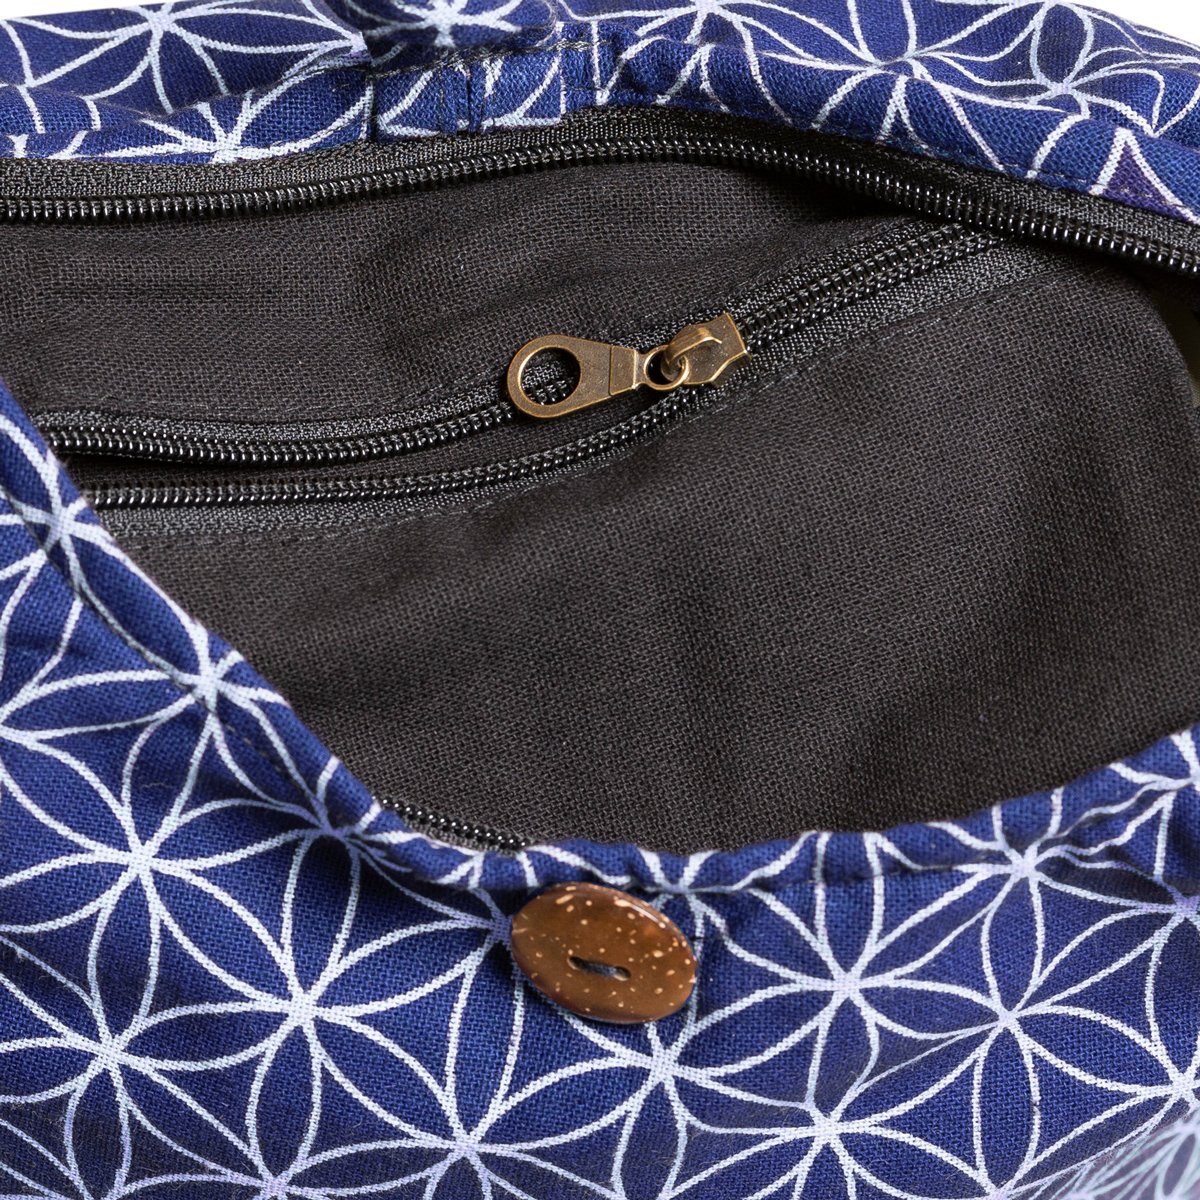 PANASIAM Schultertasche Geometrix Schulterbeutel praktische Wickeltasche Beuteltasche Umhängetasche, blau In aus Größen auch geeignet als und Handtasche 100% 2 Lebensblume Baumwolle